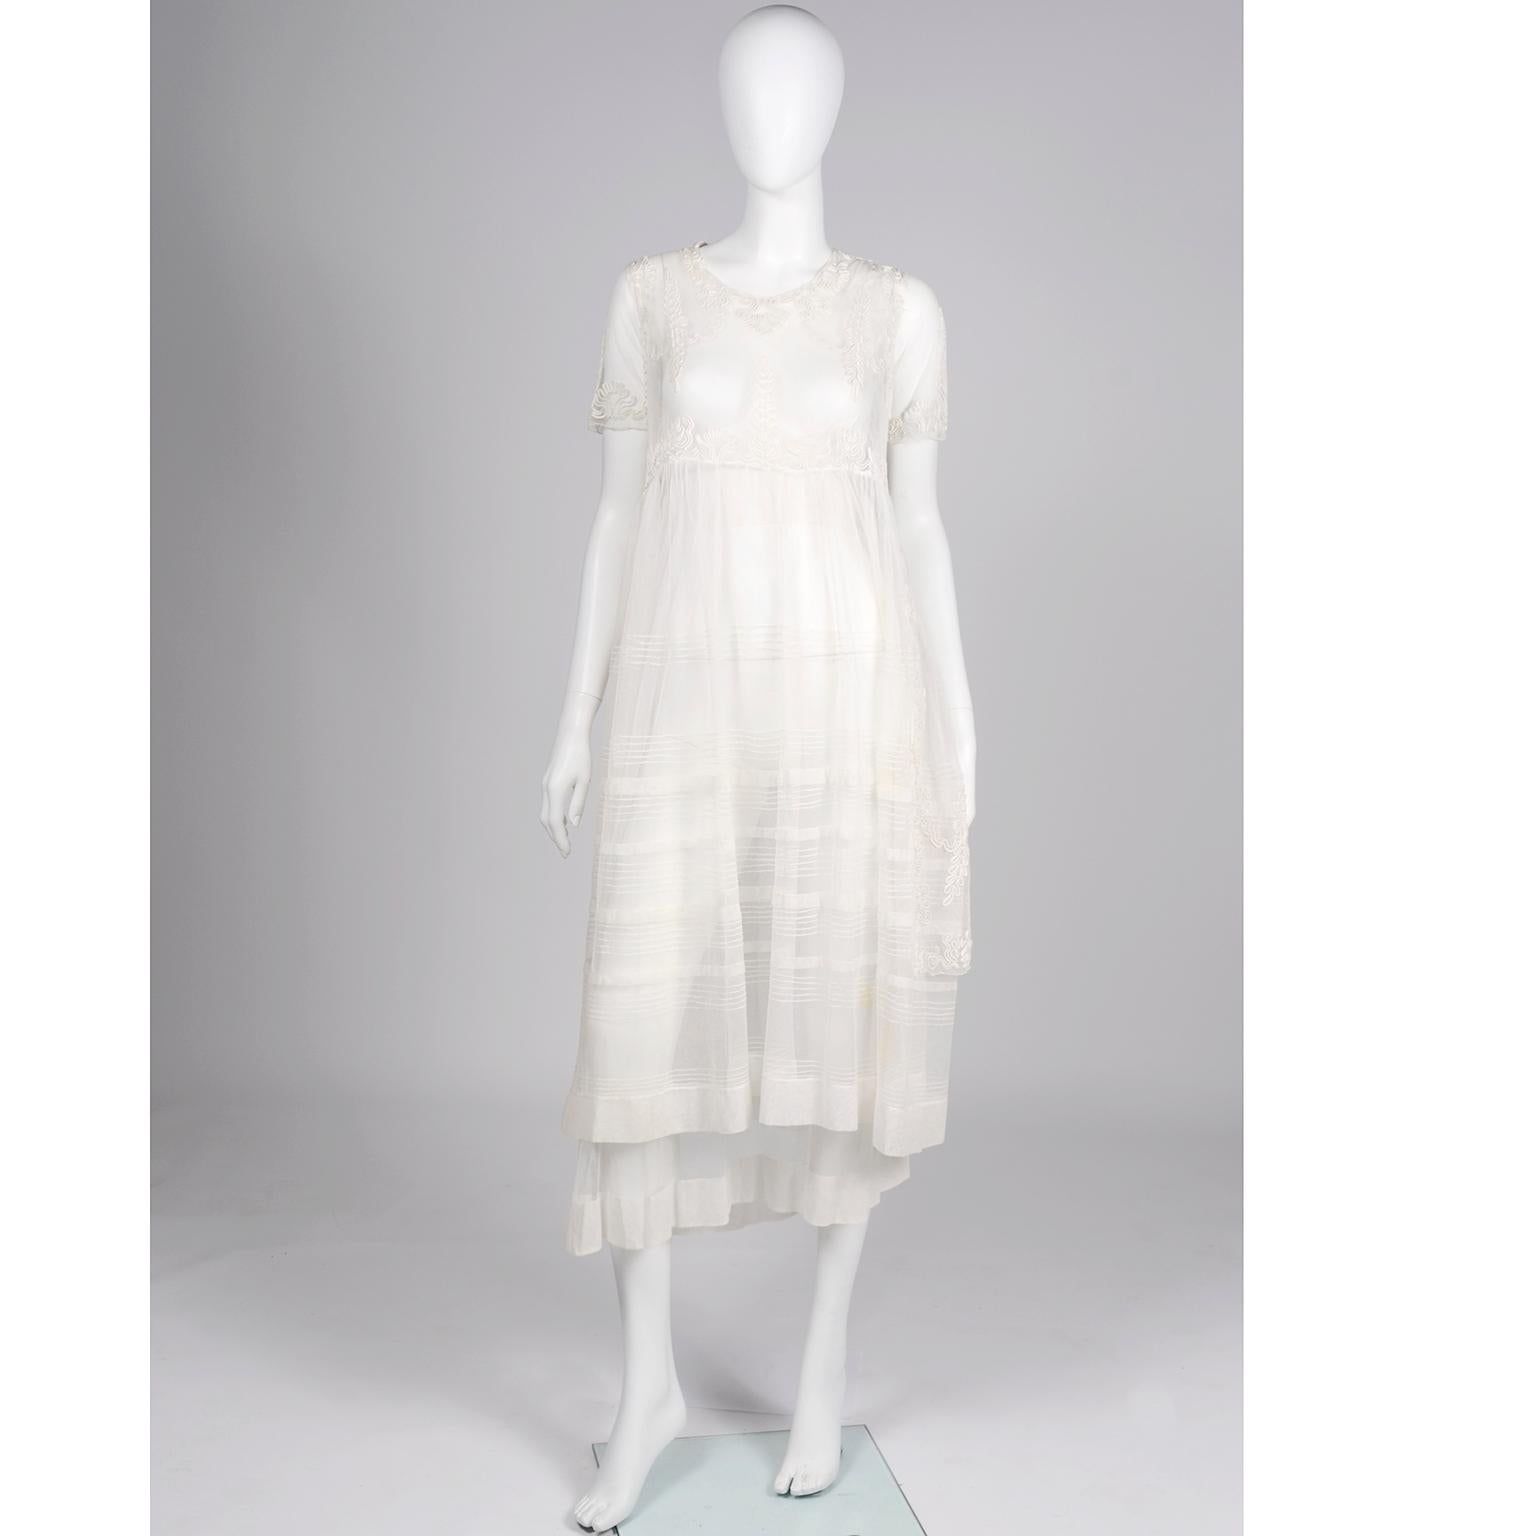 C'est une incroyable robe vintage des années 1910 ! !! Le détail de la soutache est si bien fait et nous aimons particulièrement les trois couches de filet doux. La couche de base est solide avec un ourlet et une ceinture en tulle épais. La couche